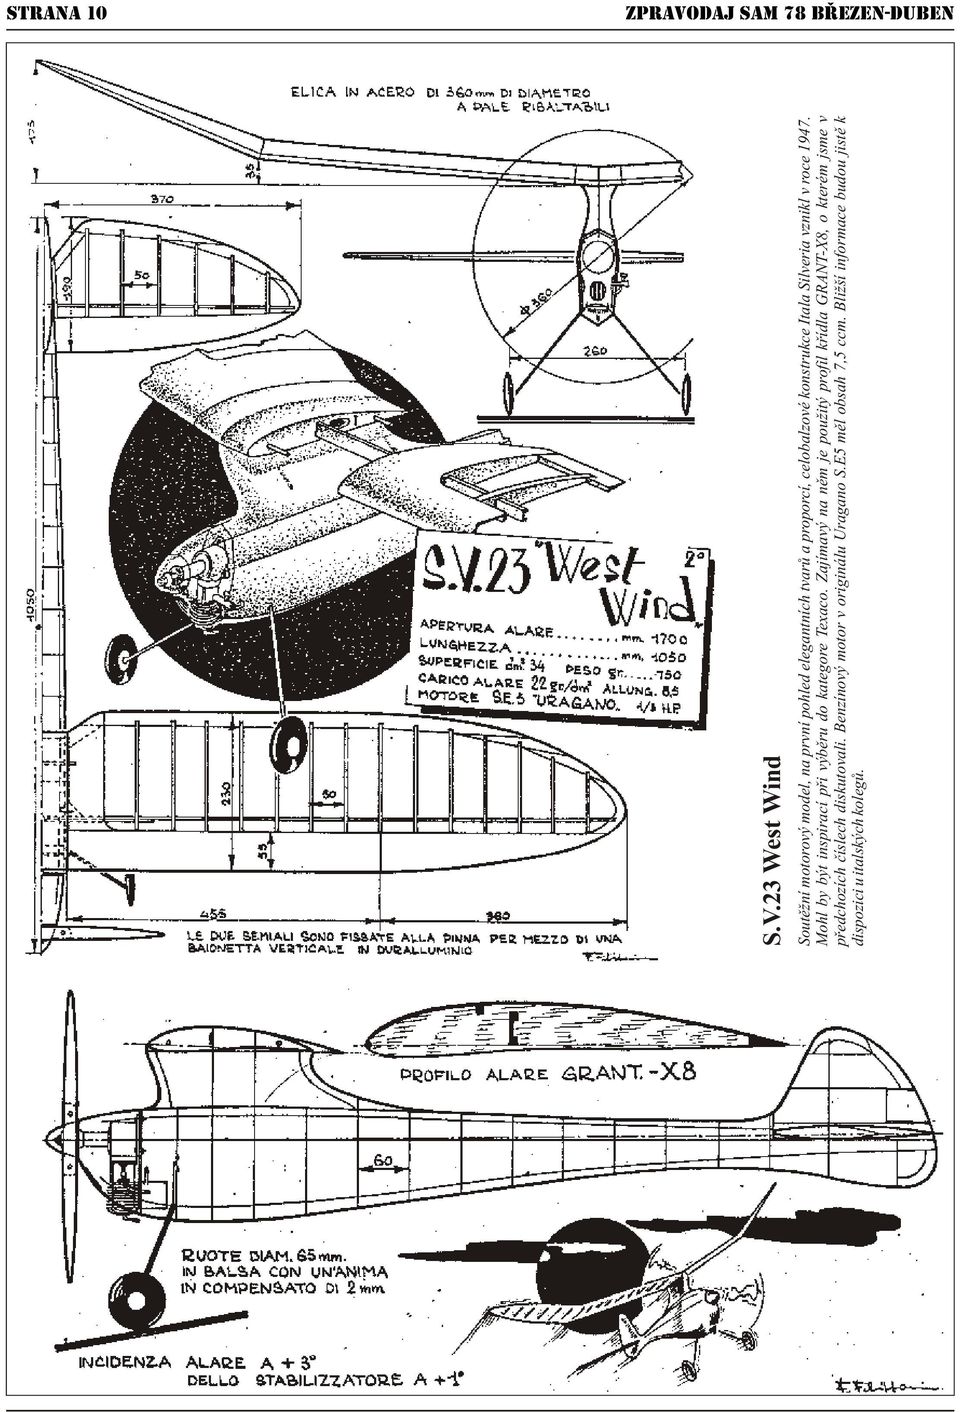 23 West Wind Soutìžní motorový model, na první pohled elegantních tvarù a proporcí, celobalzové konstrukce Itala